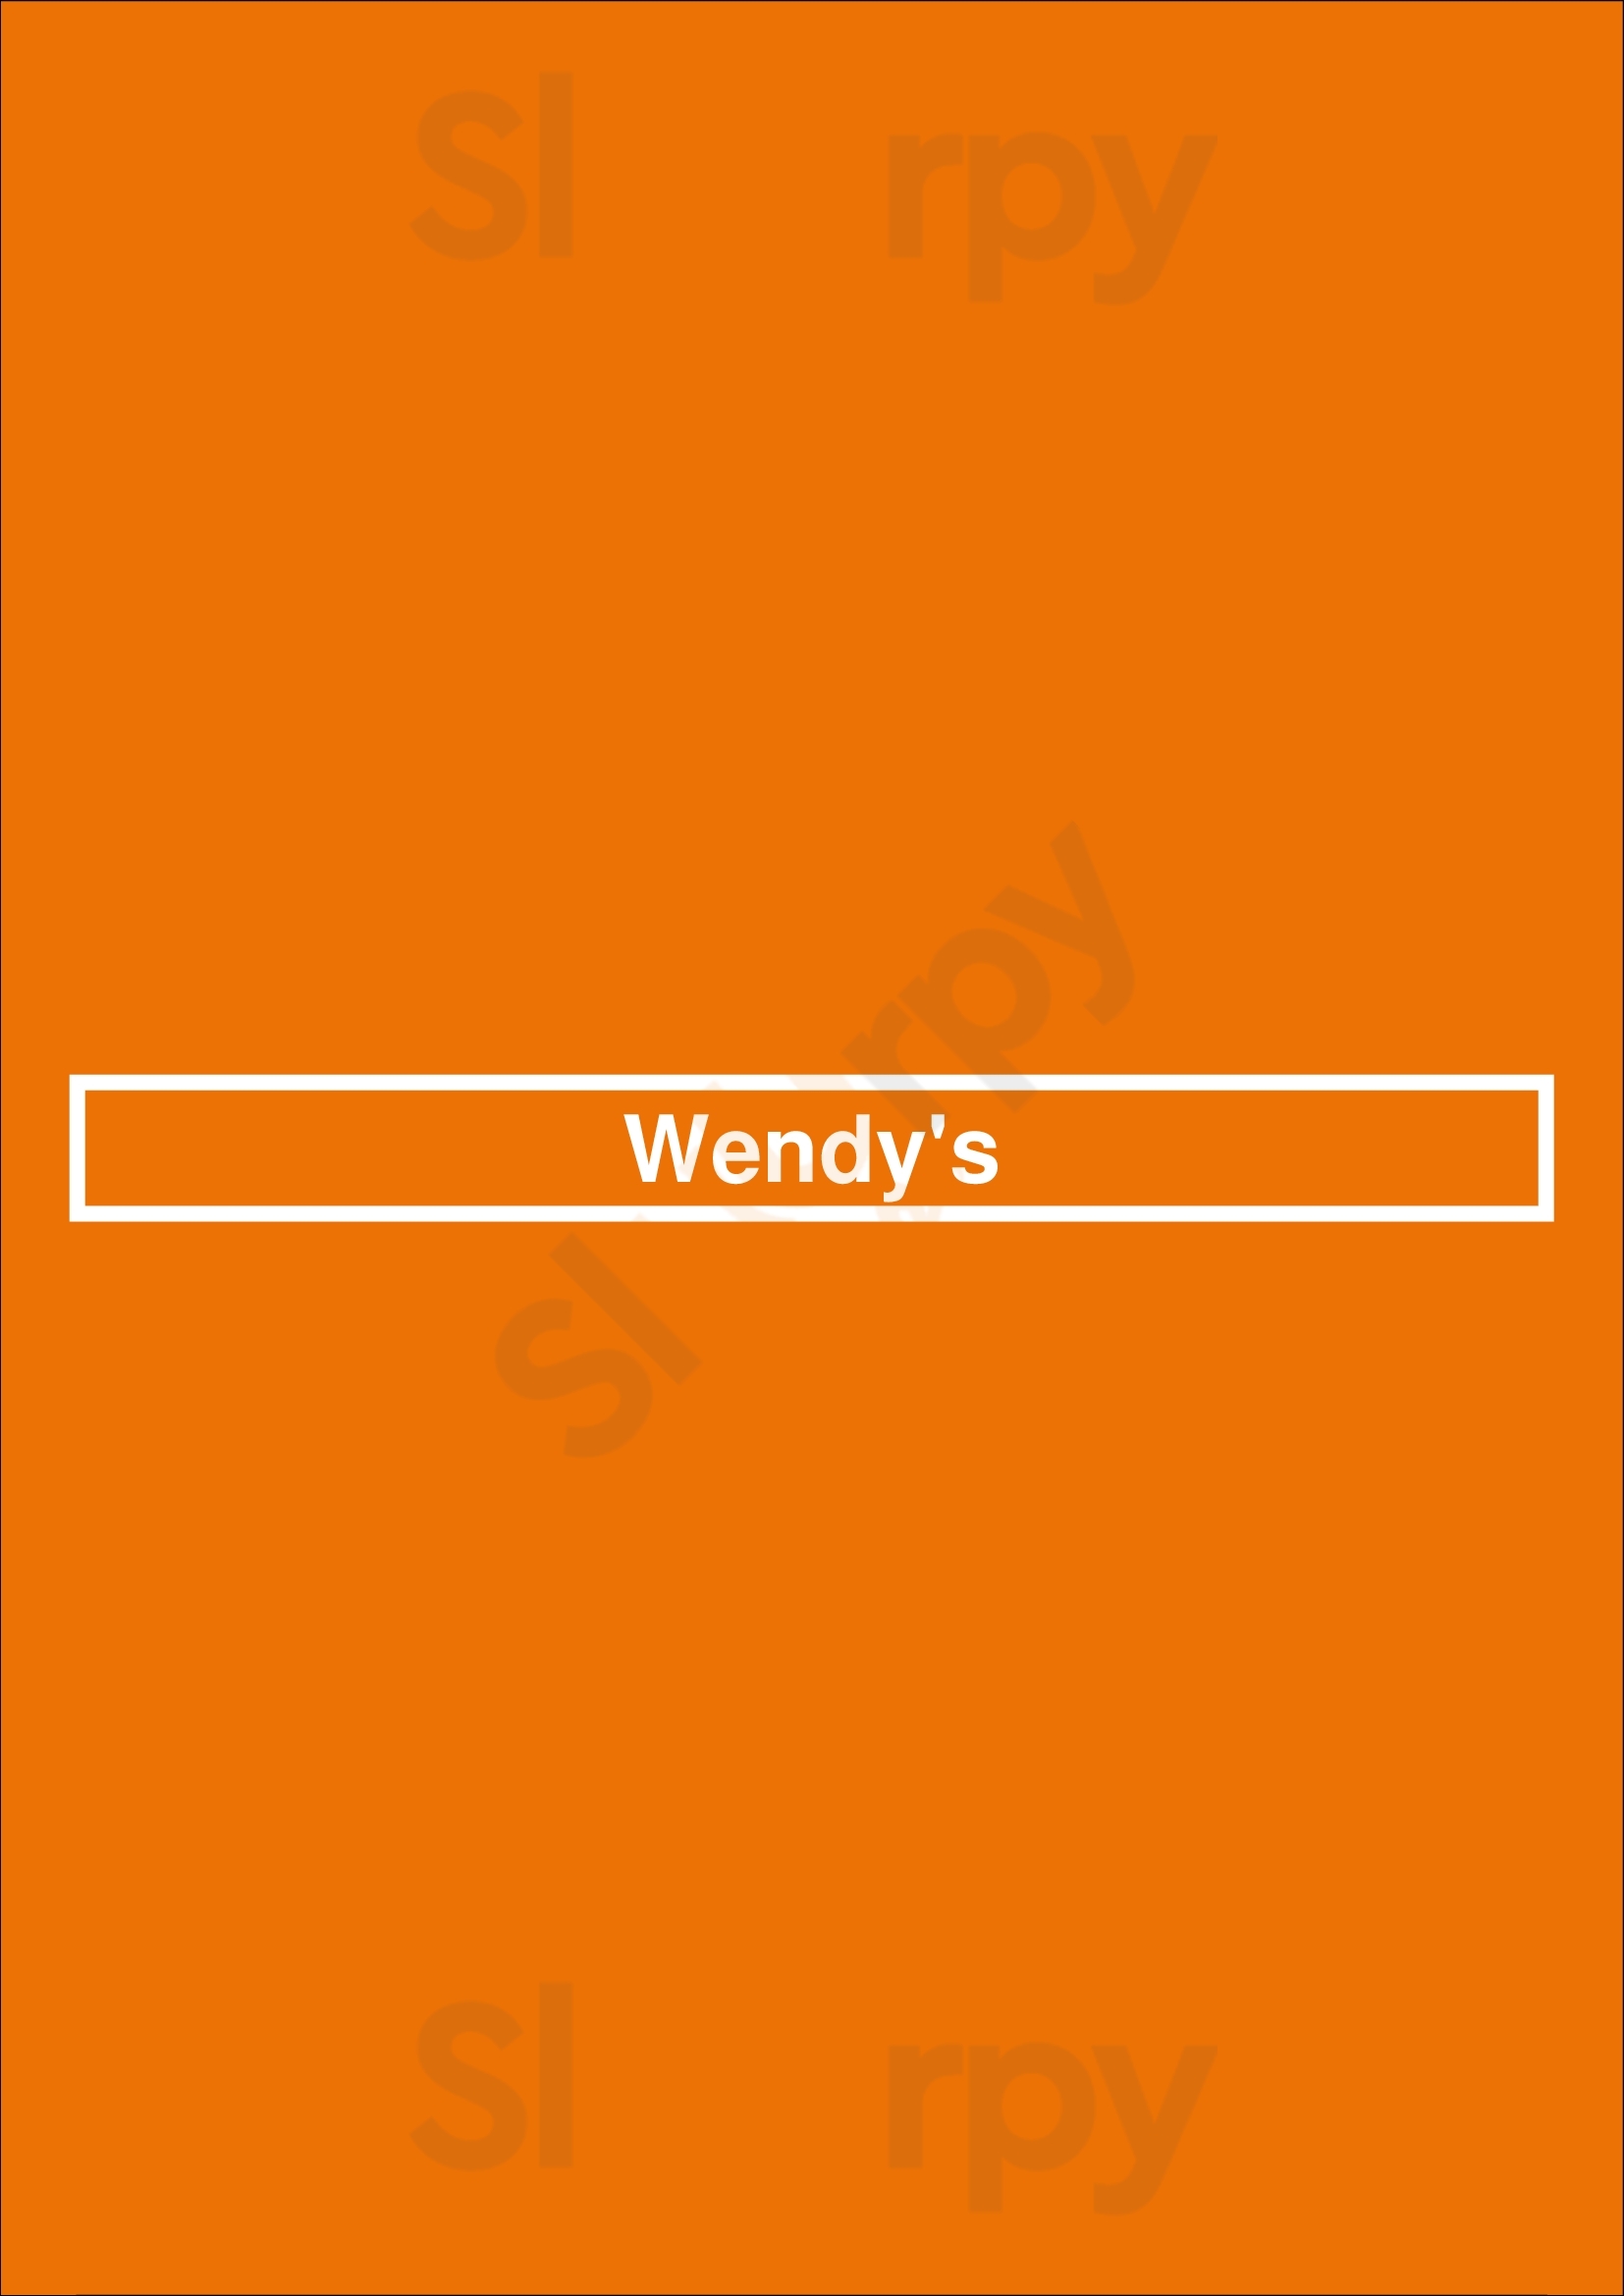 Wendy's Cincinnati Menu - 1